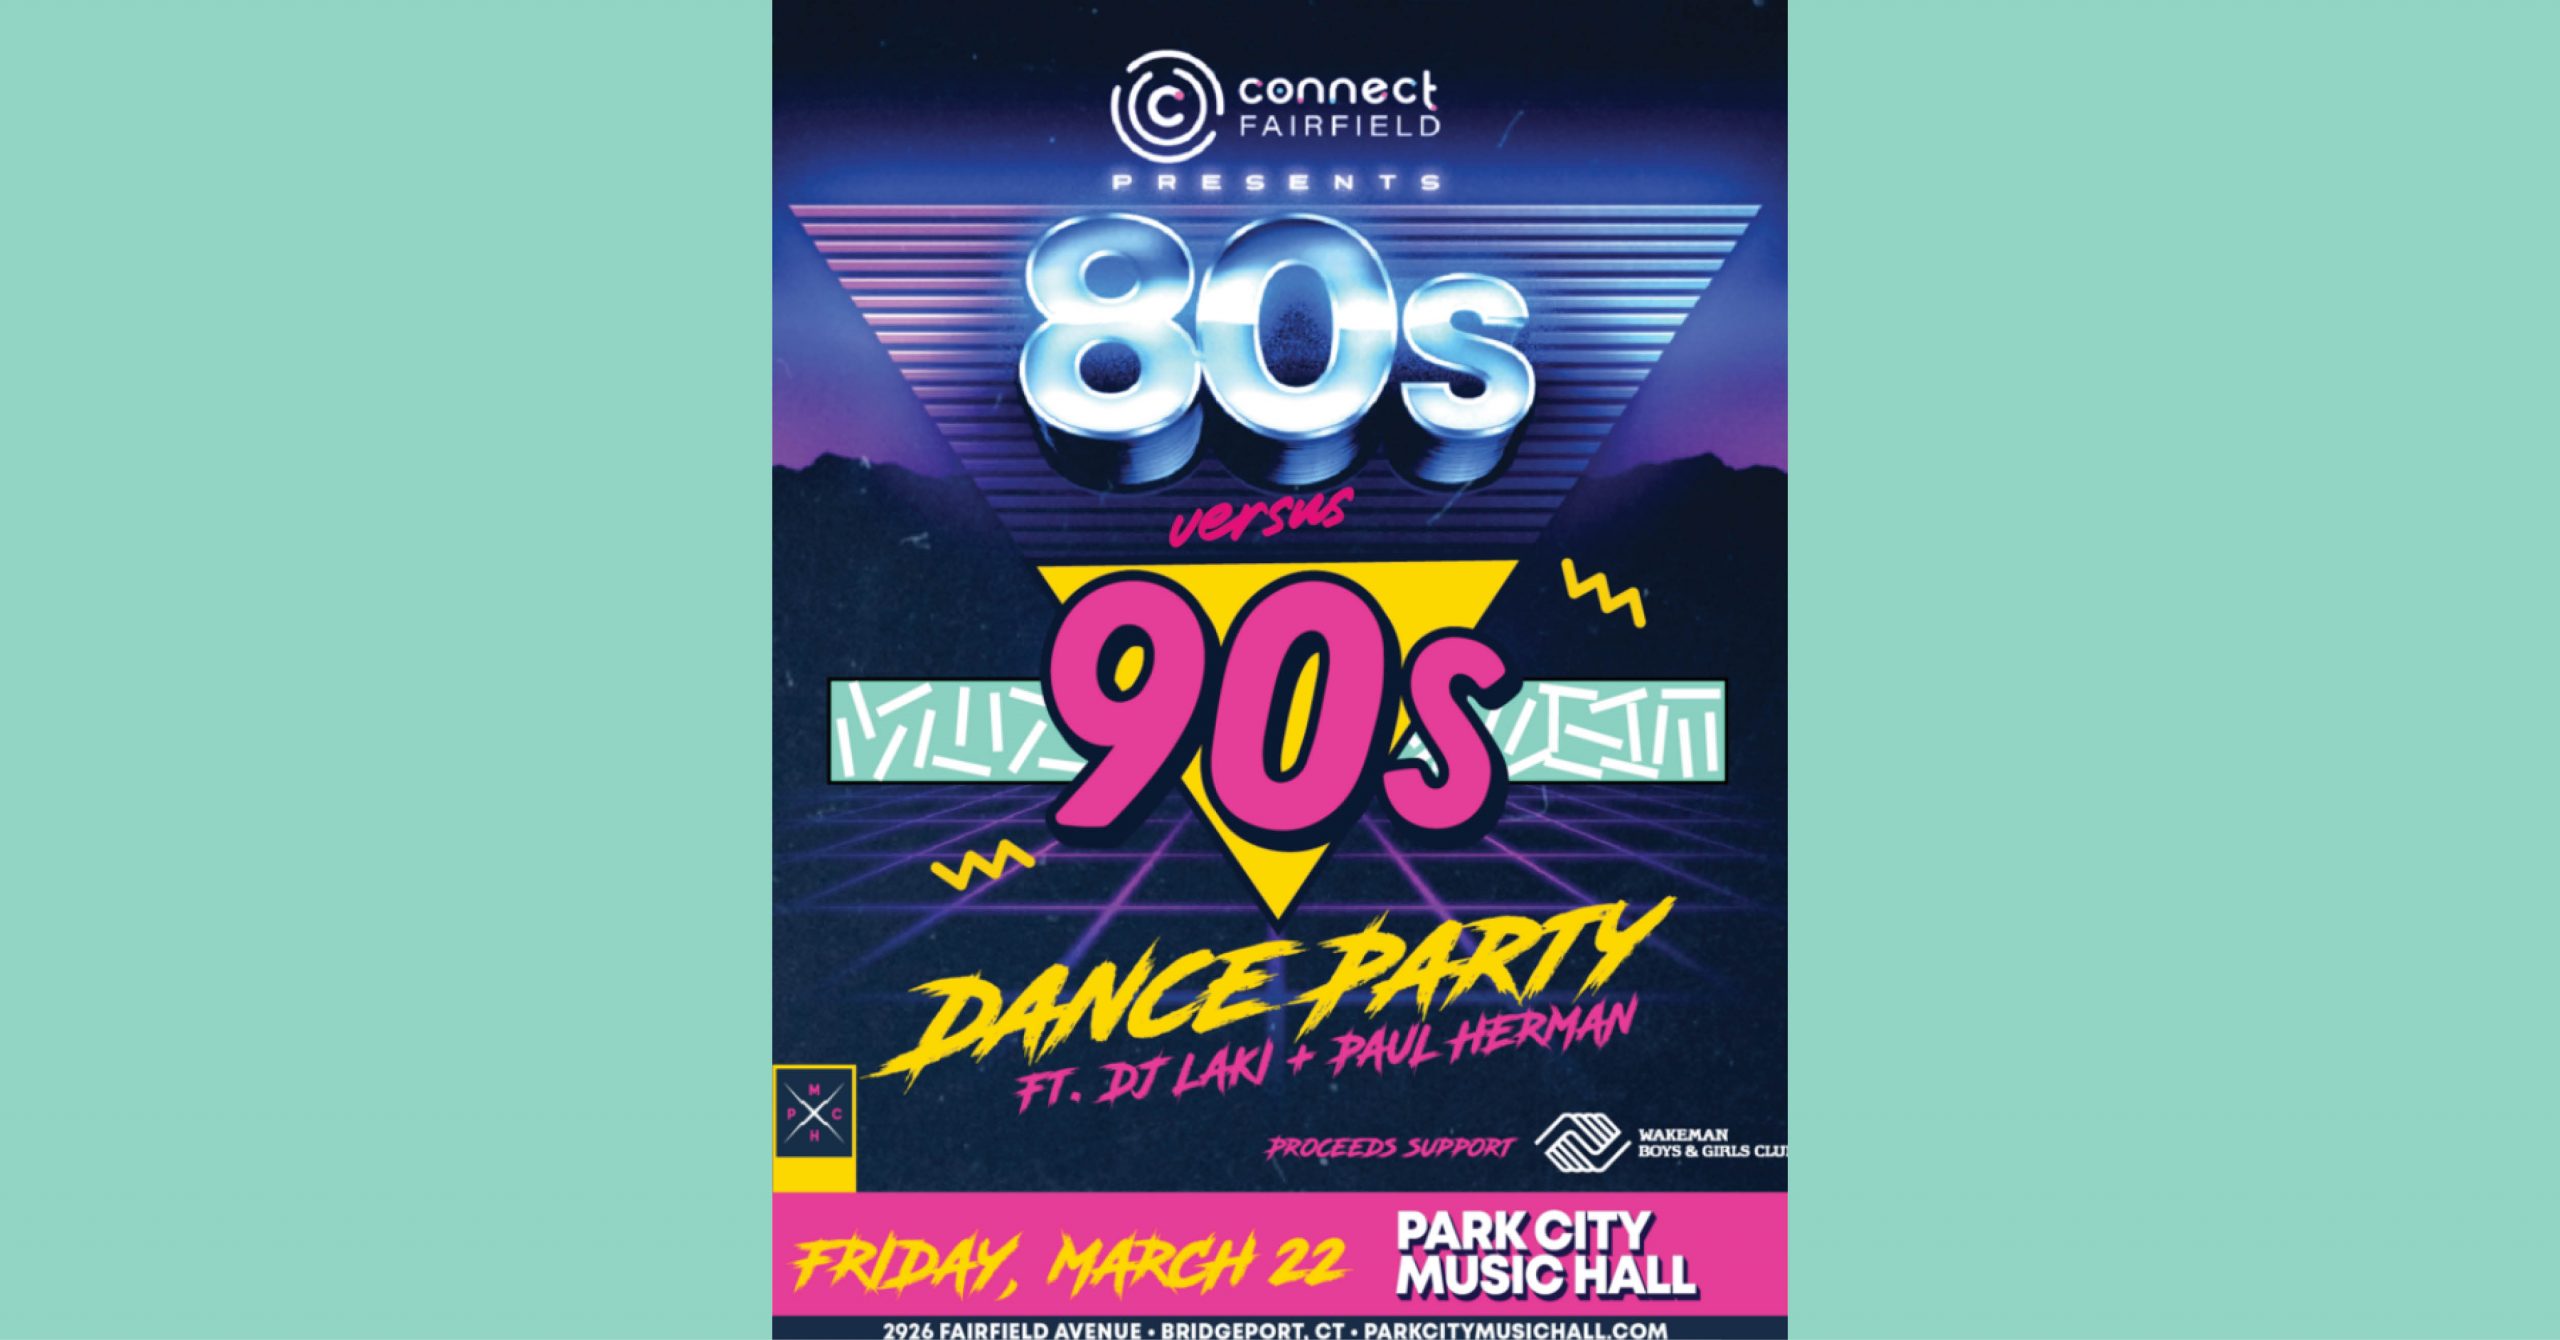 80s vs 90s Dance Party FUNRaiser